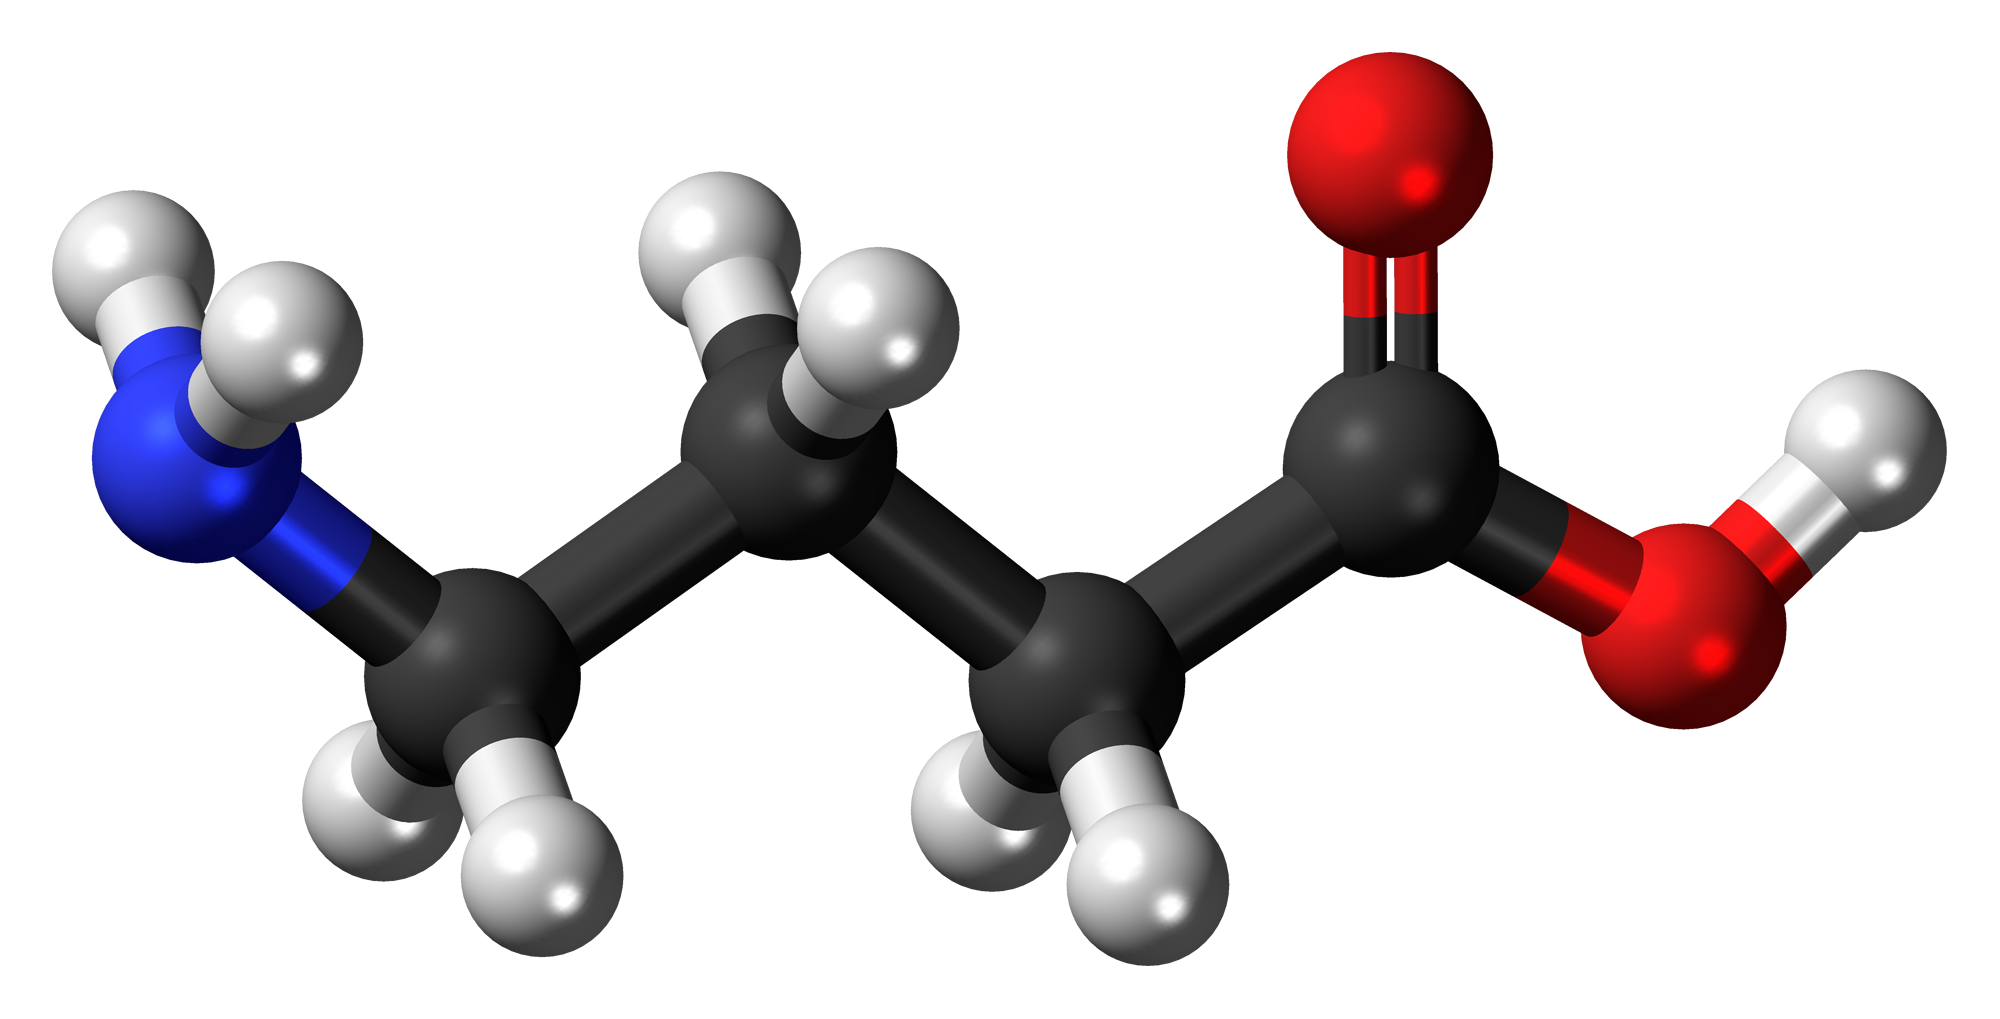 Kyselina γ-aminomáselná nebo kyselina gama-aminomáselná, obecně známá pod zkratkou GABA, je nejběžnější formou kyseliny γ-aminomáselné.